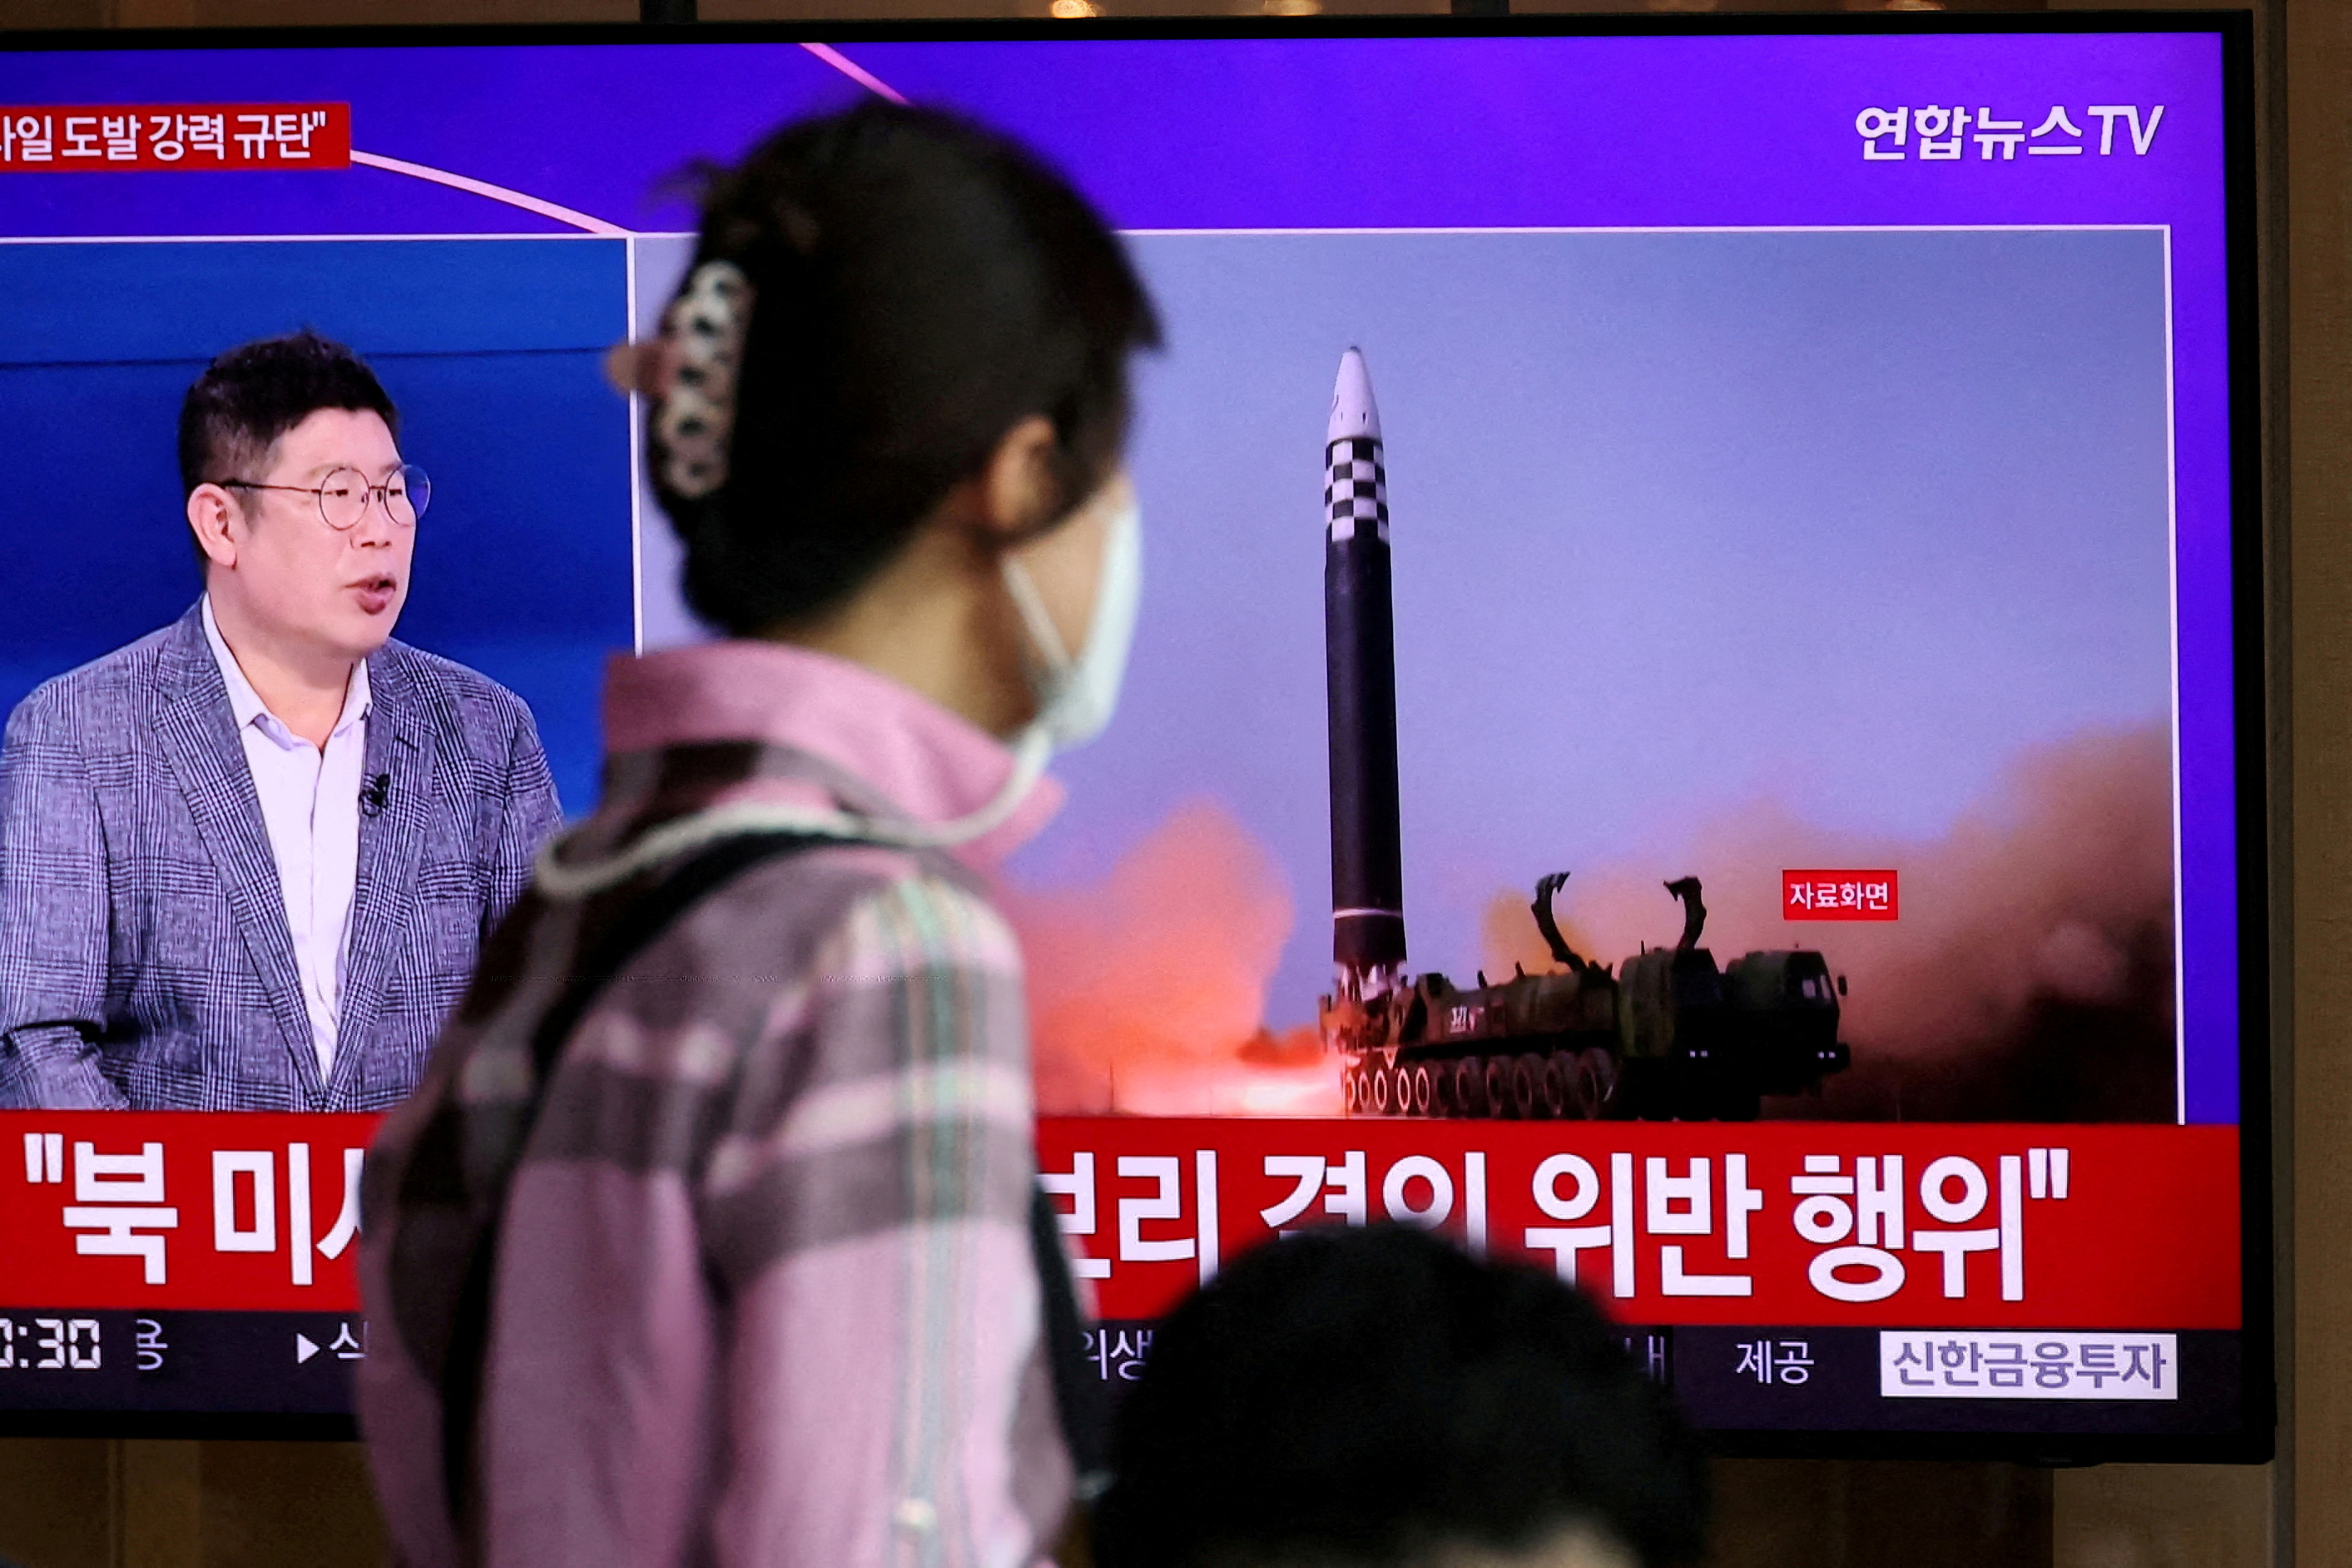 FOTO DE ARCHIVO: Una mujer observa un televisor que emite una noticia sobre el lanzamiento de tres misiles por parte de Corea del Norte, incluido uno que se cree que es un misil balístico intercontinental (ICBM), en Seúl, Corea del Sur, el 25 de mayo de 2022. REUTERS/Kim Hong-Ji